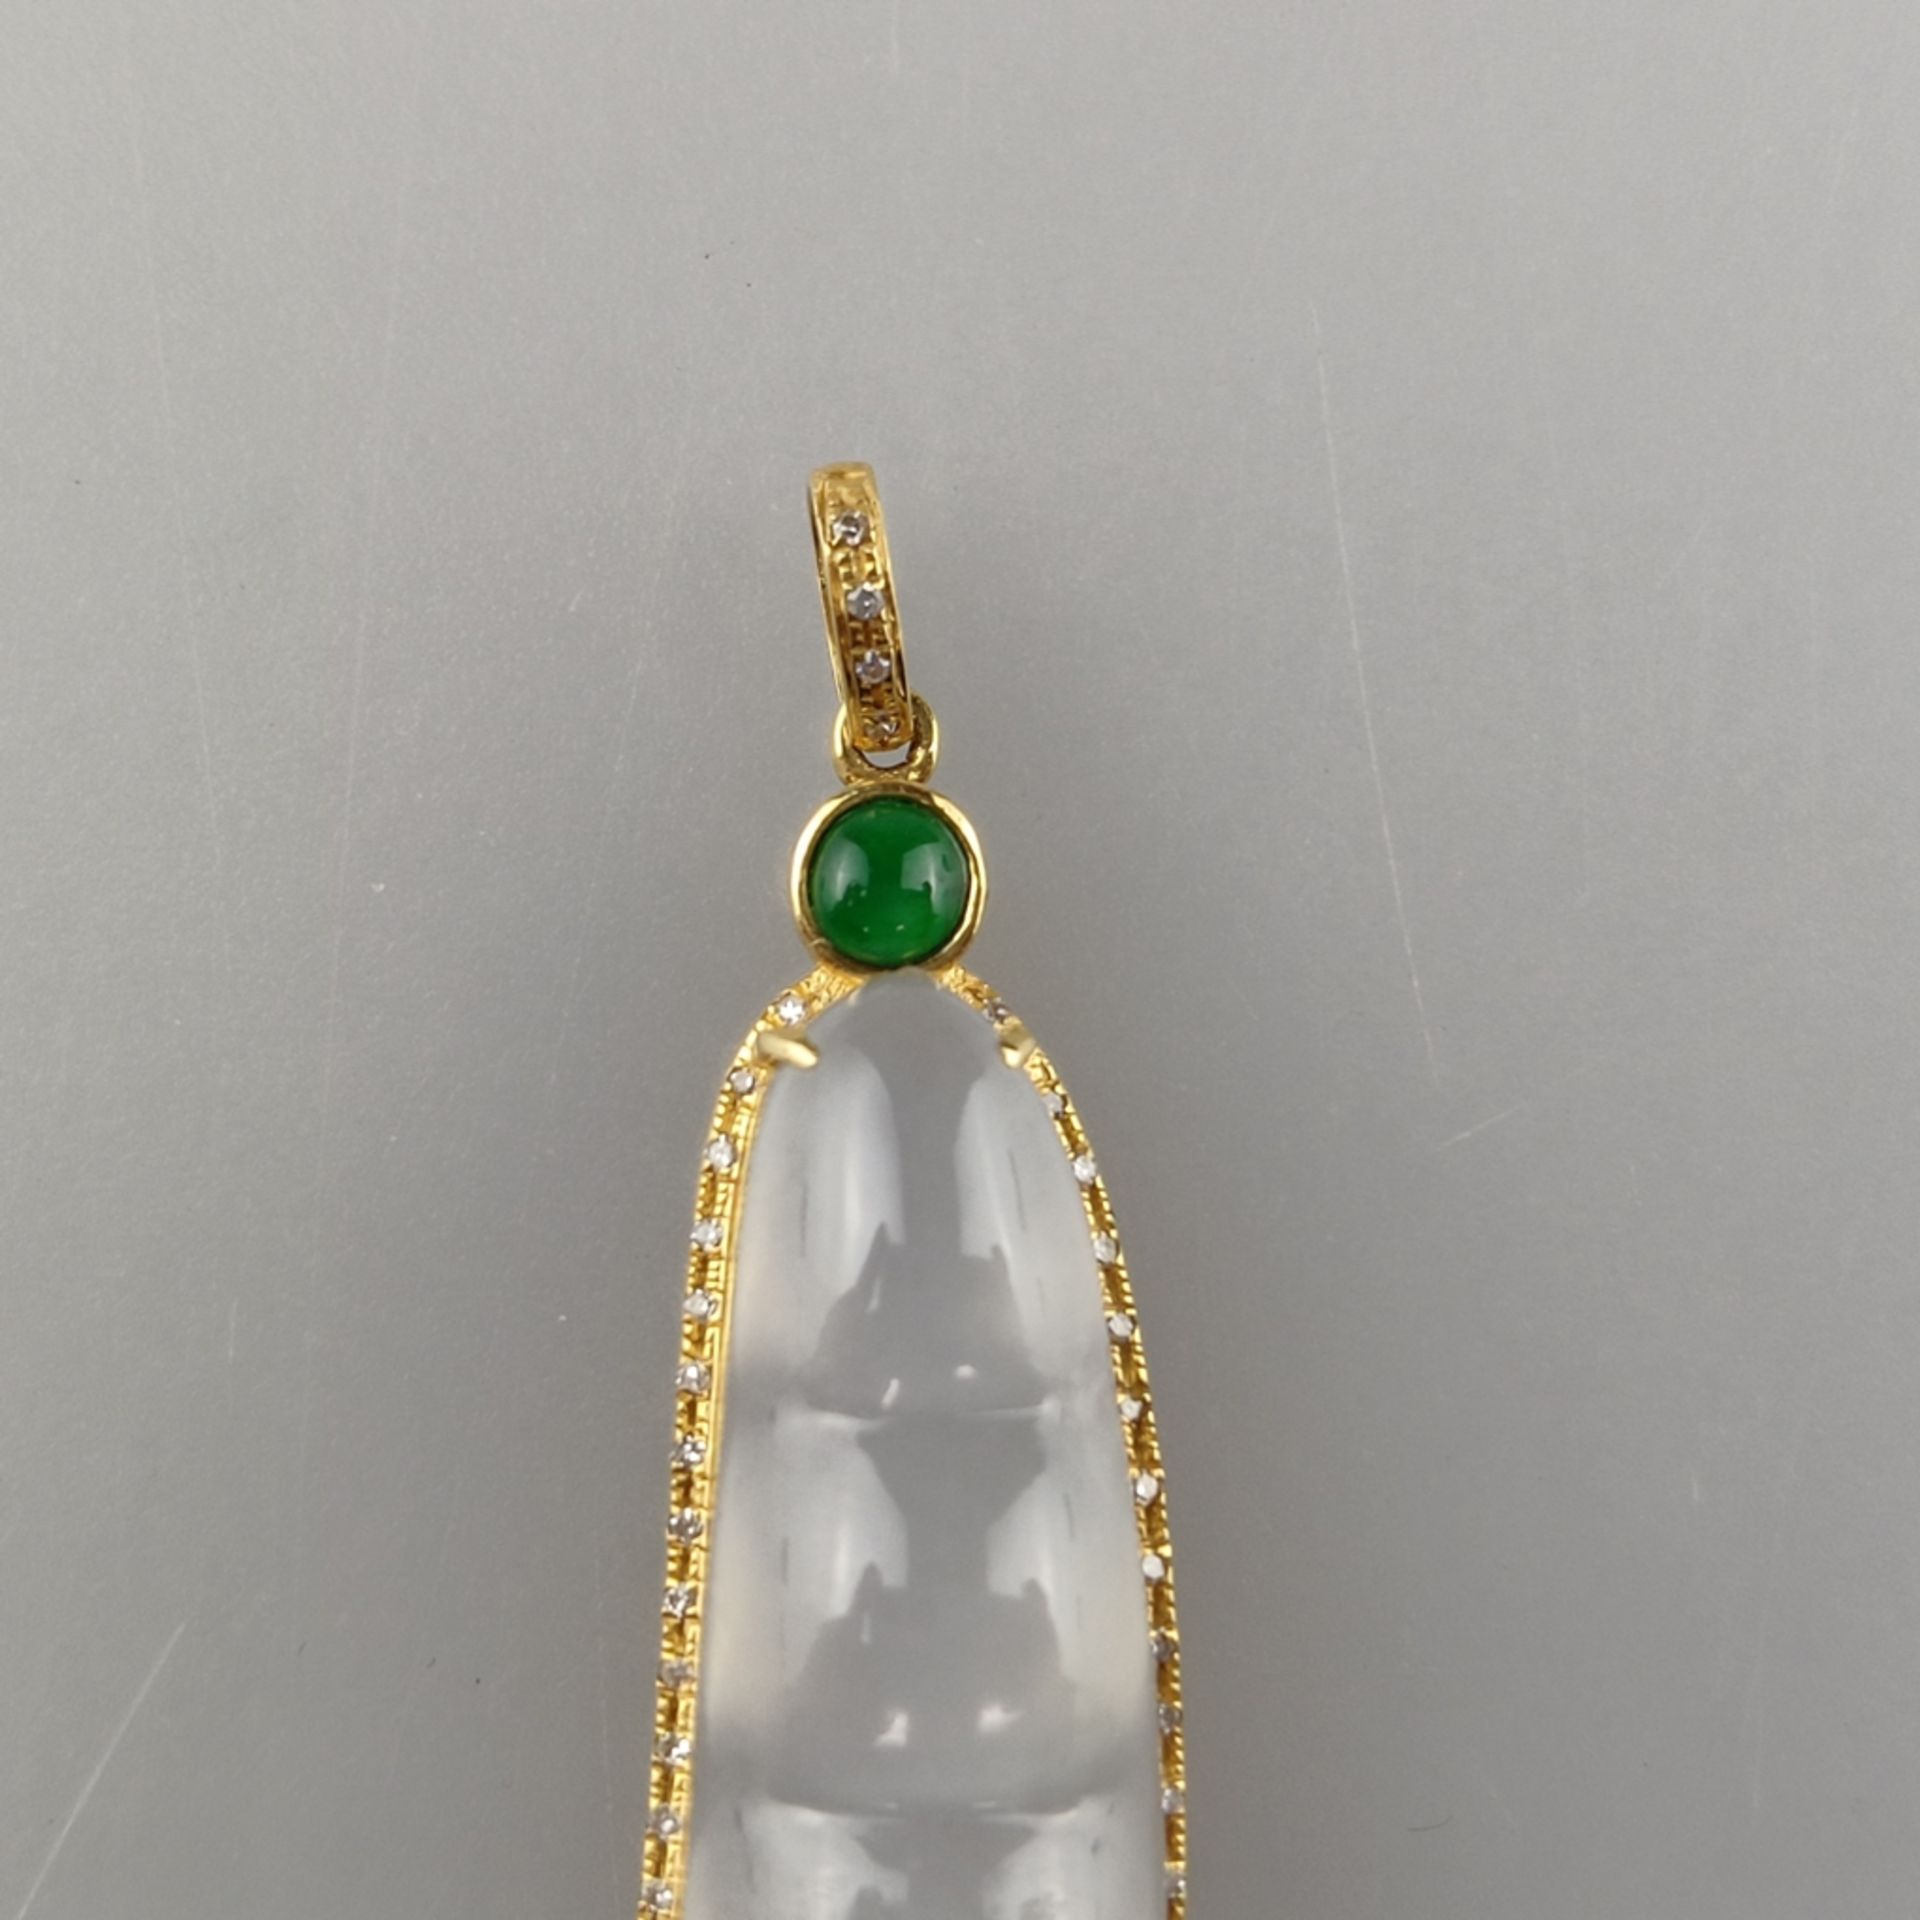 Jade-Anhänger mit Diamanten - Gelbgold 750/000 (18K), milchig weiße Jade, grüner Jadecabochon, schö - Bild 3 aus 6